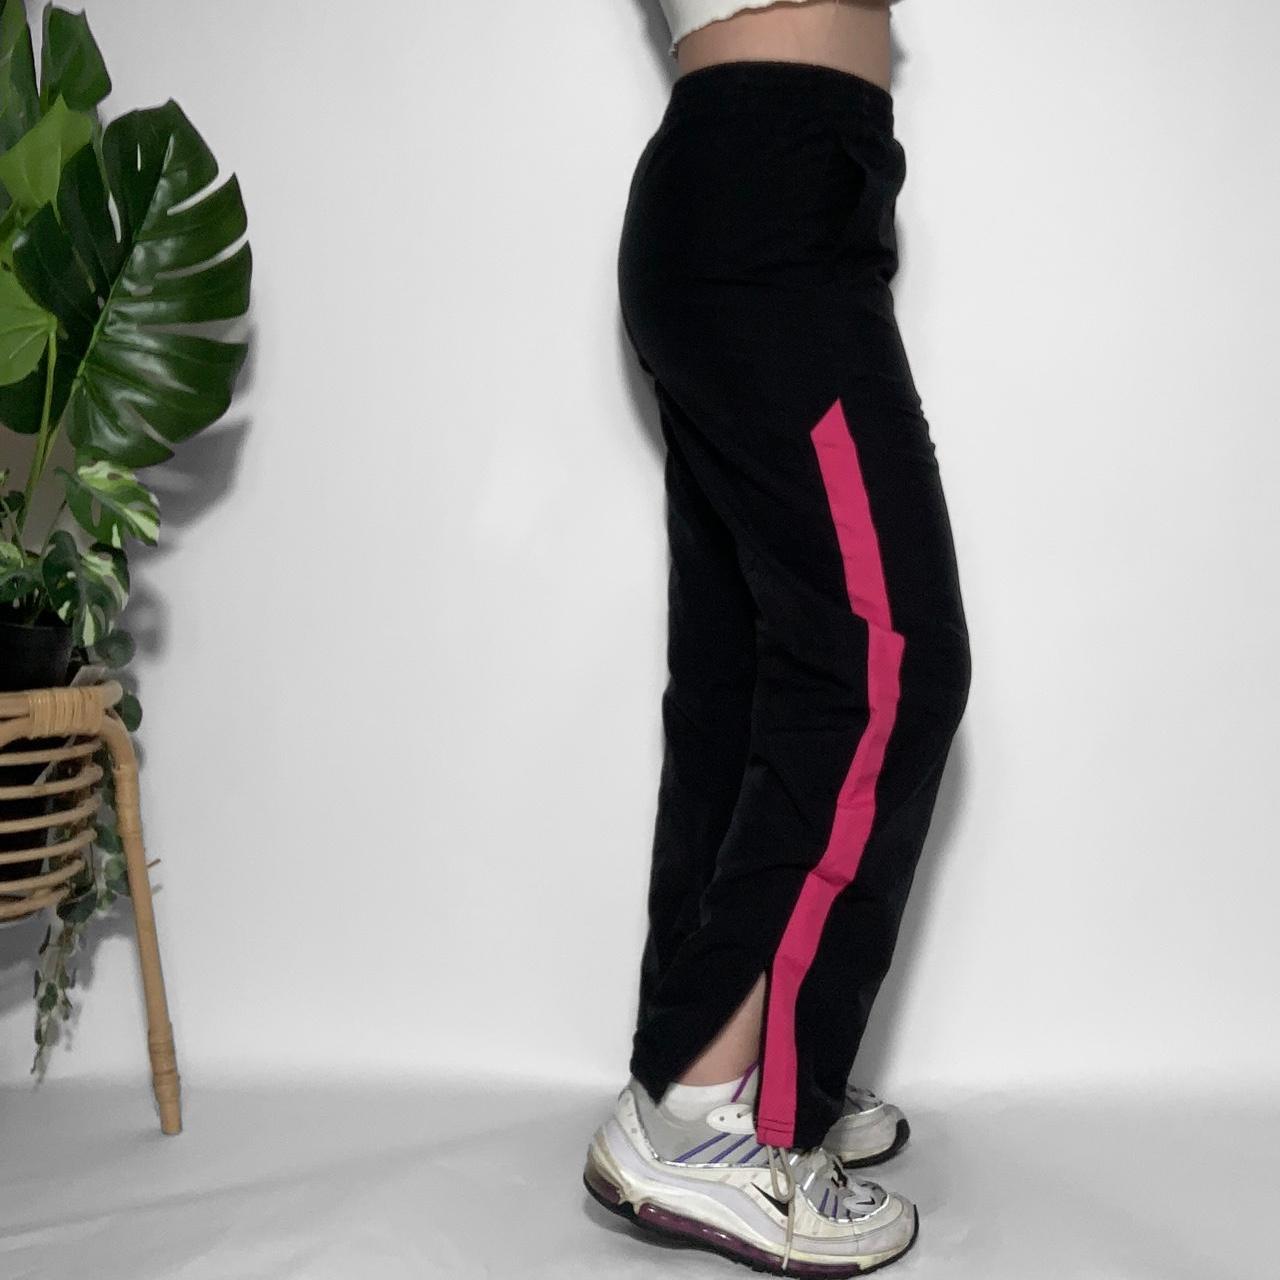 Vintage y2k Nike black and hot pink baggy track pants